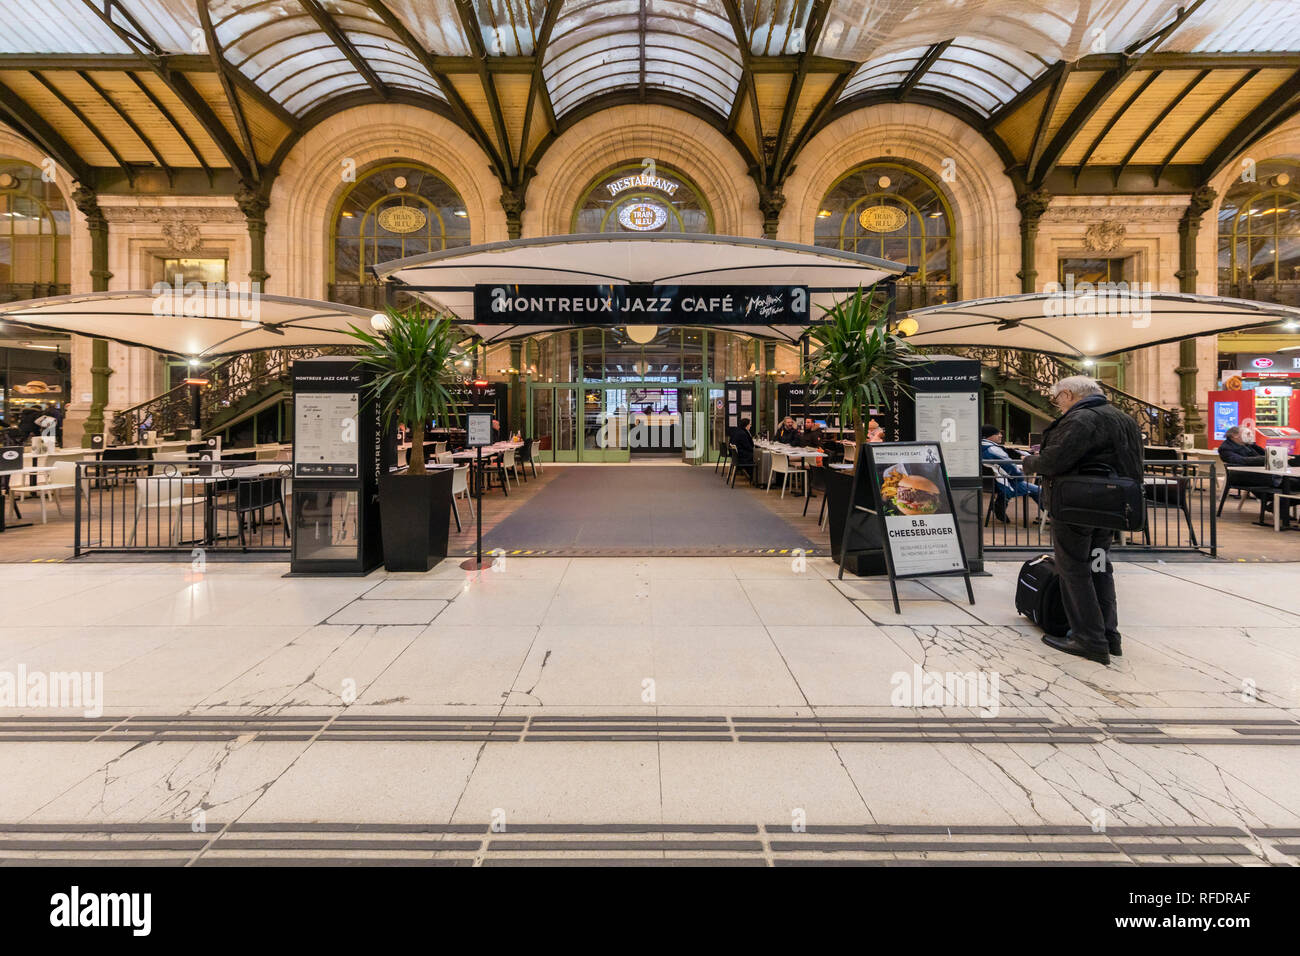 France, Paris, Gare de Lyon, January 2019: Montreux Jazz cafe and Le Train Bleu restaurant. Stock Photo